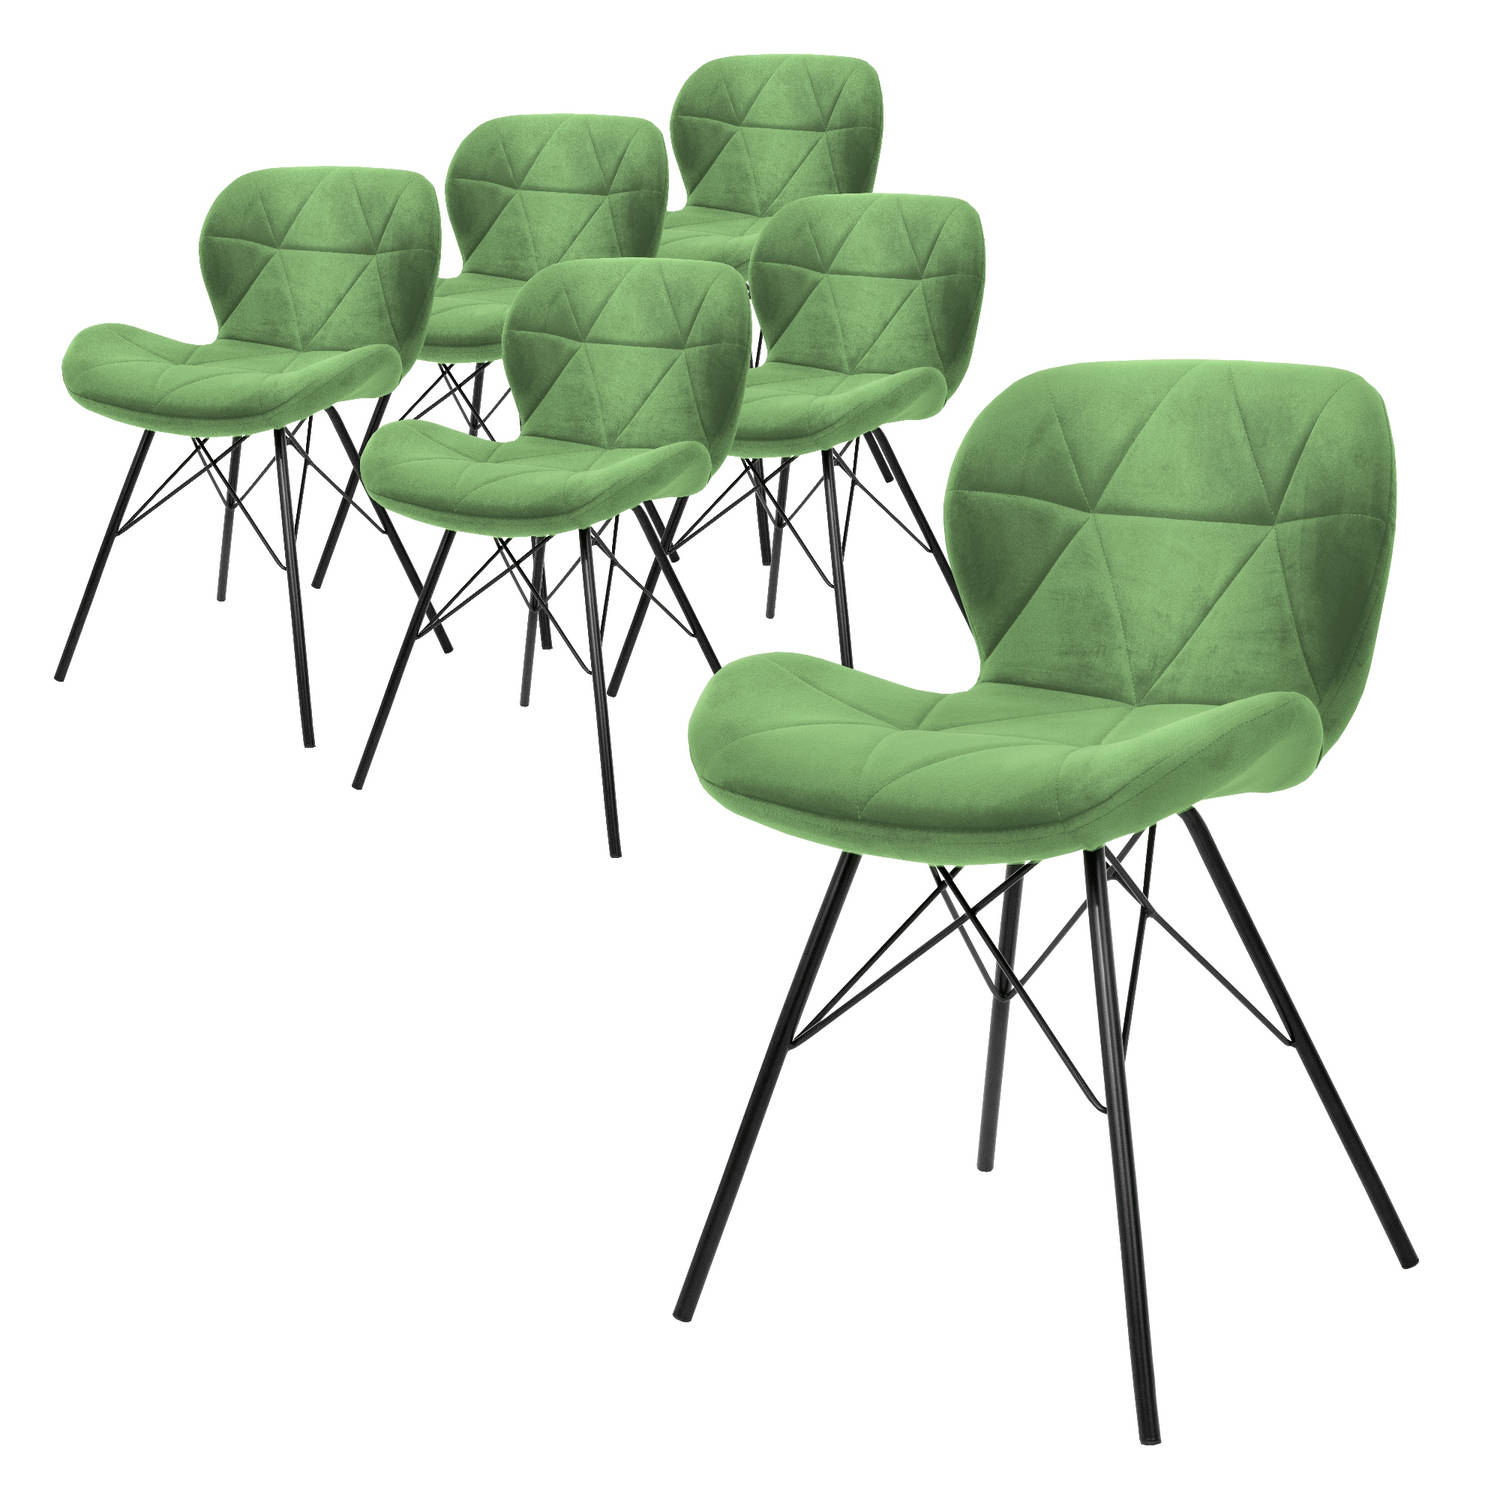 ML-Design set van 6 eetkamerstoelen met rugleuning, groen, keukenstoel met fluwelen bekleding, gestoffeerde stoel met metalen poten, ergonomische stoel voor eettafel, woonkamerstoe